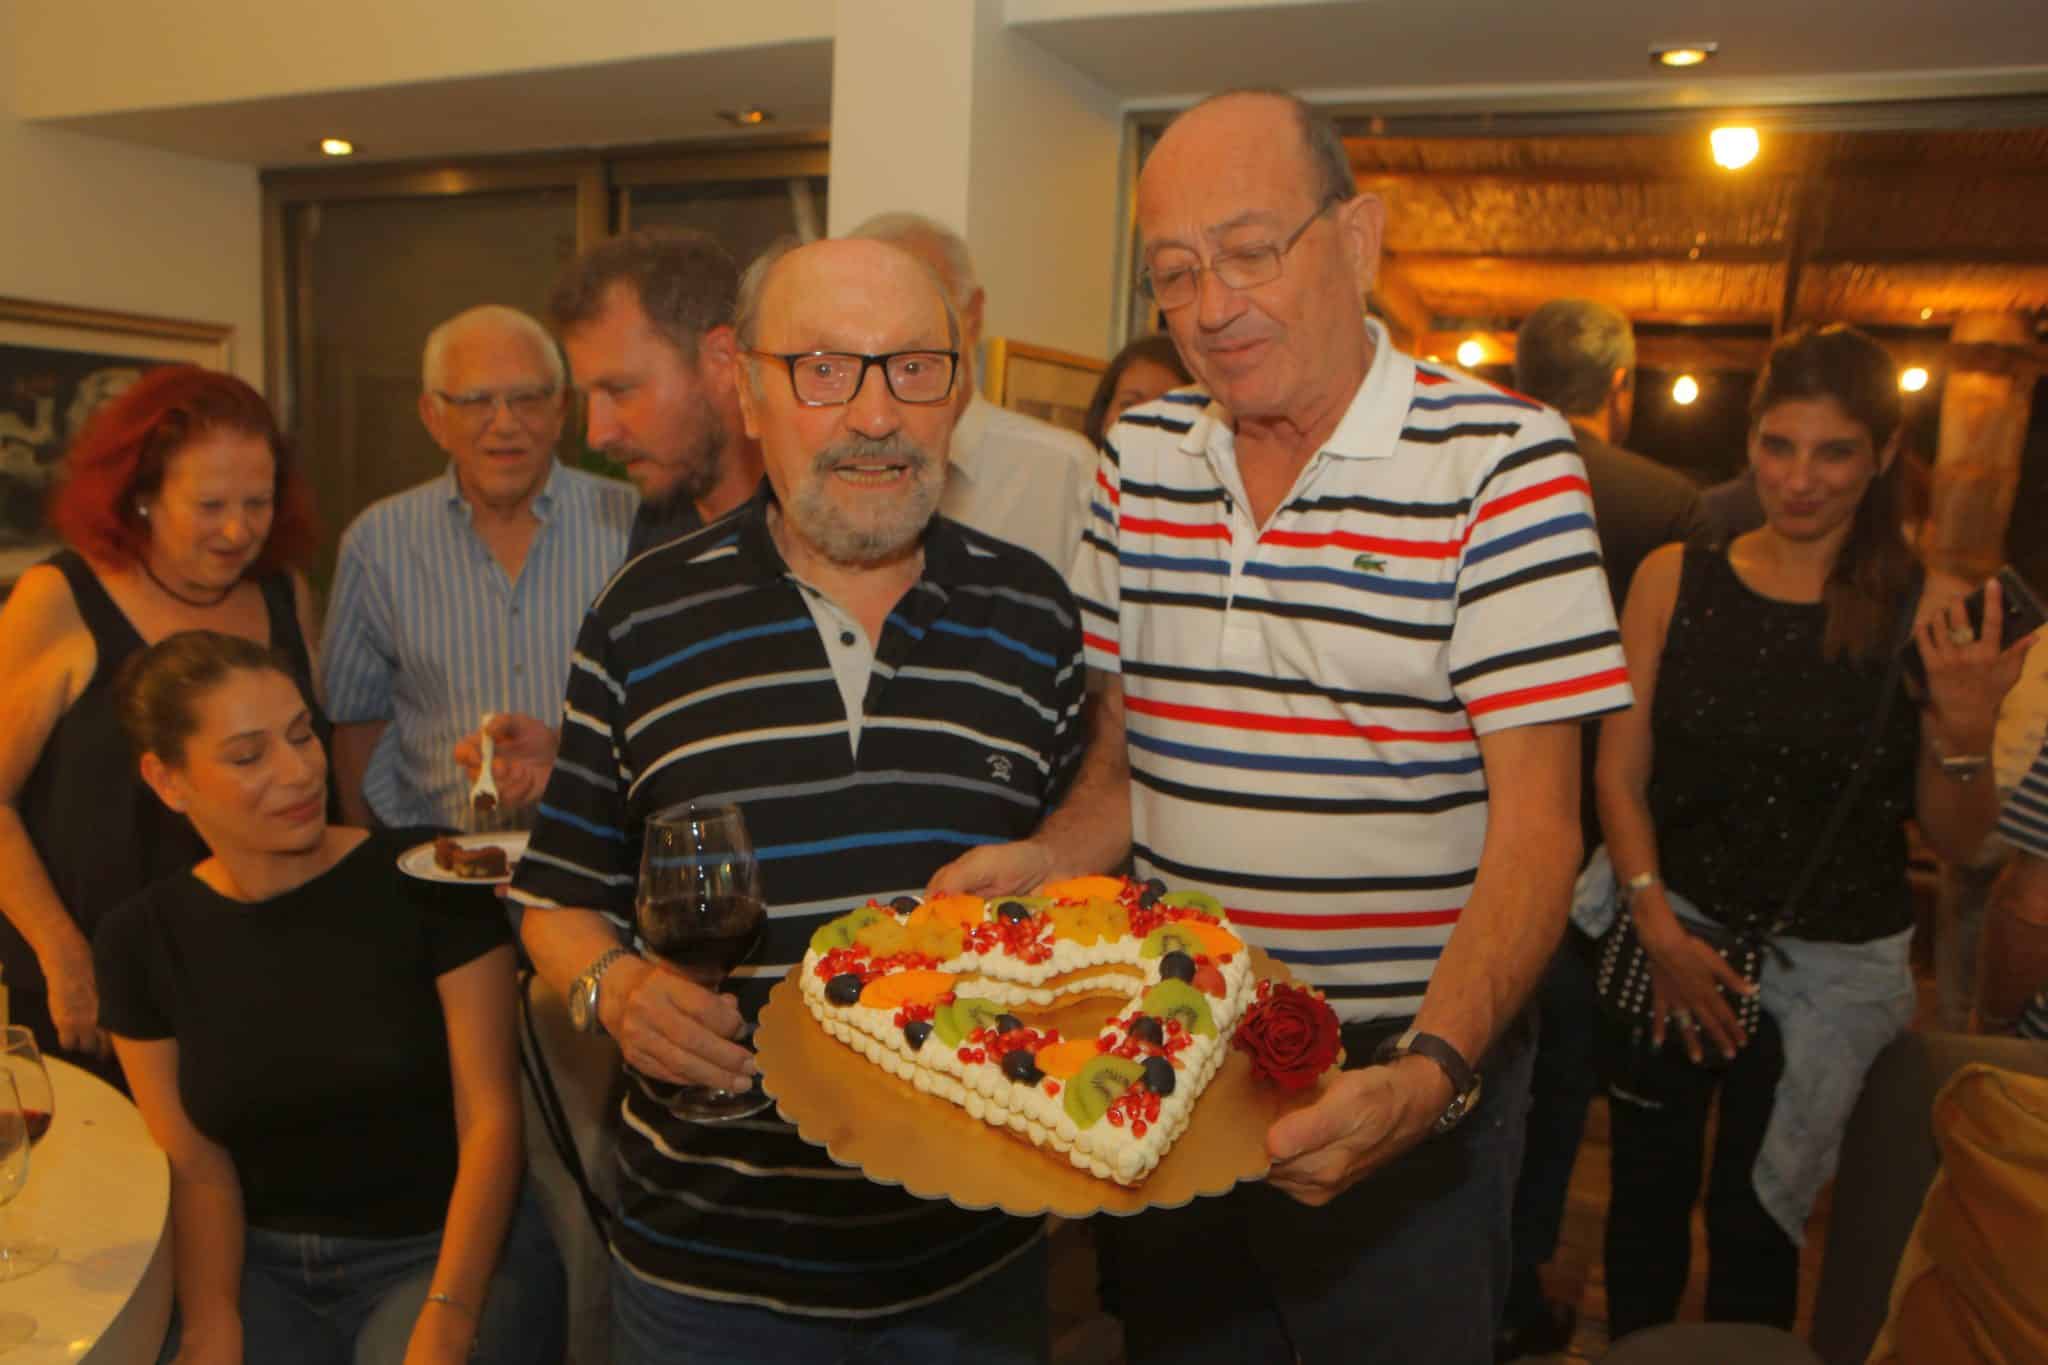 אמנון פאר מציג למיכאל (מימי) בן יוסף את עוגת האהבה ליום הולדתו ה-87. צילום דוד סילברמן dpsimages